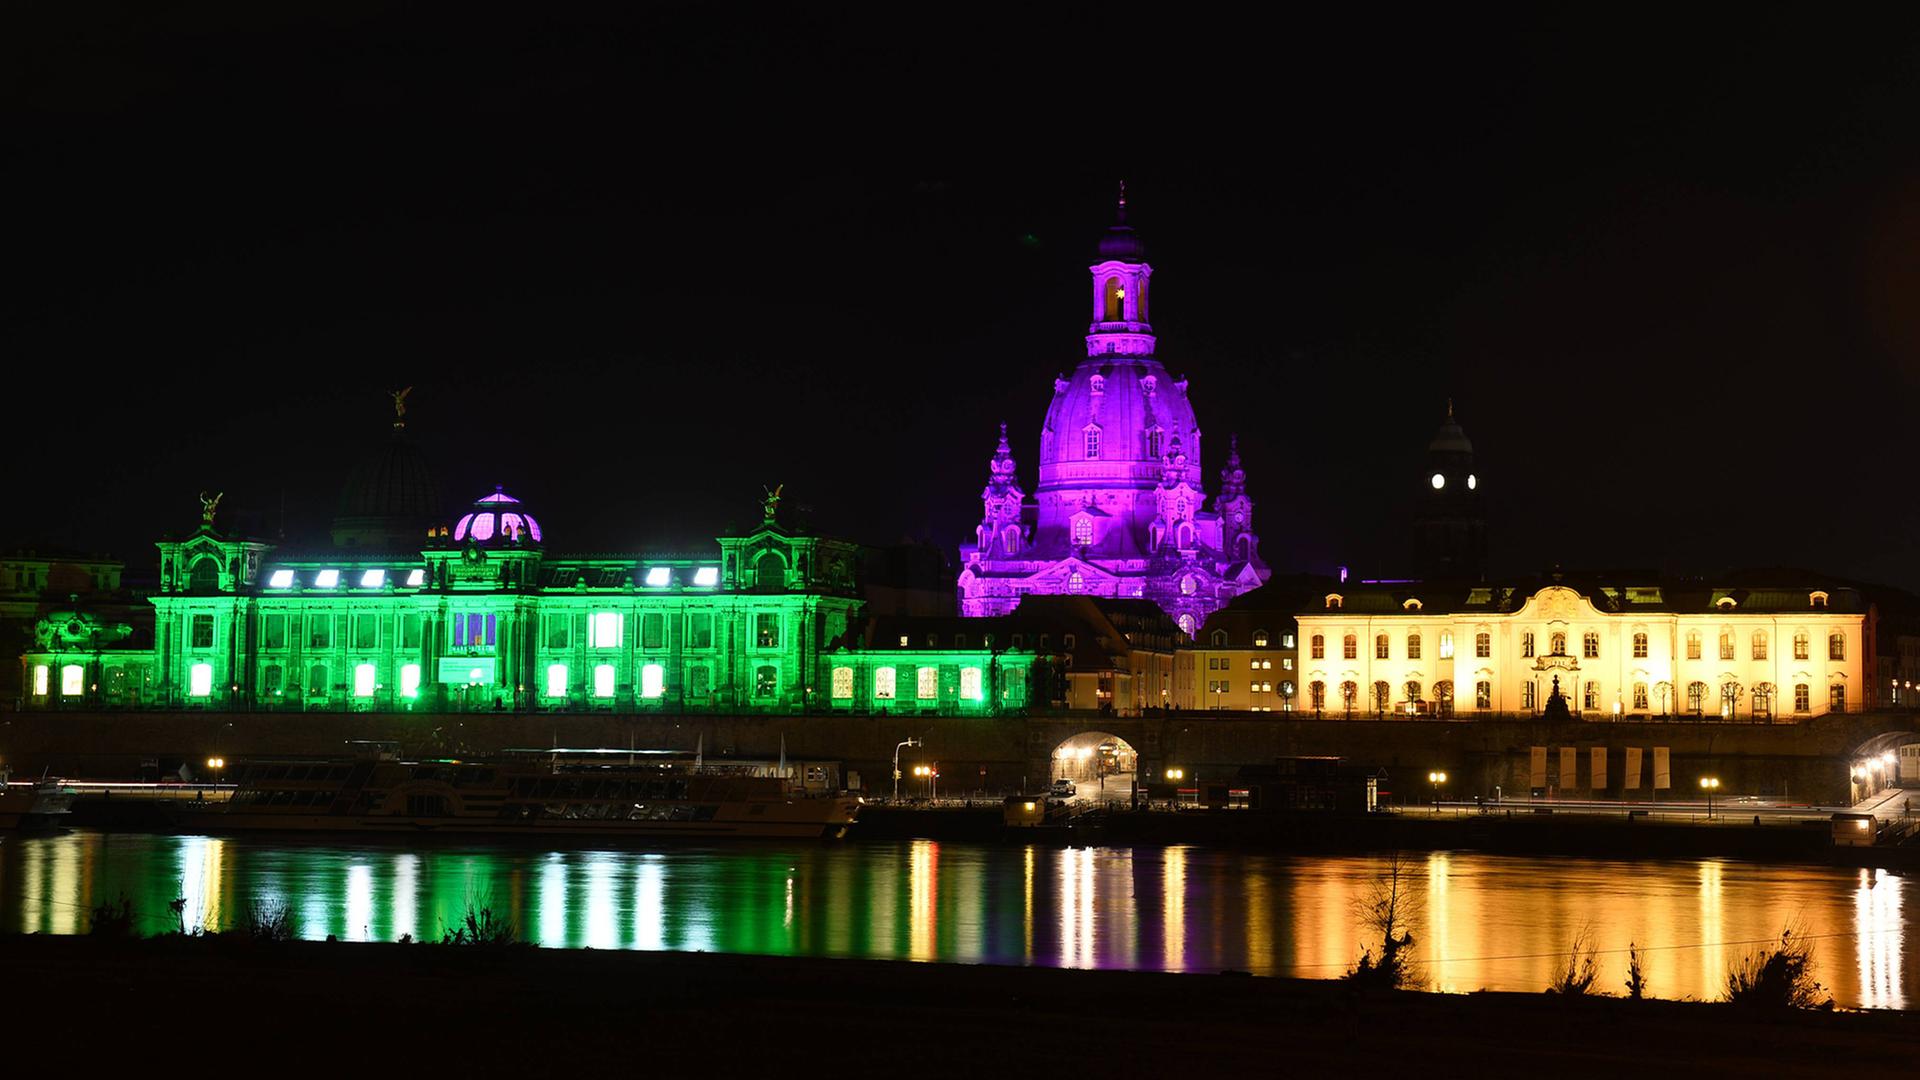 Blick auf die bunt angestrahlte Dresdner Altstadt im Rahmen der Aktion "Dresden ist bunt". Links im Bild: die Hochschule für Bildende Künste.